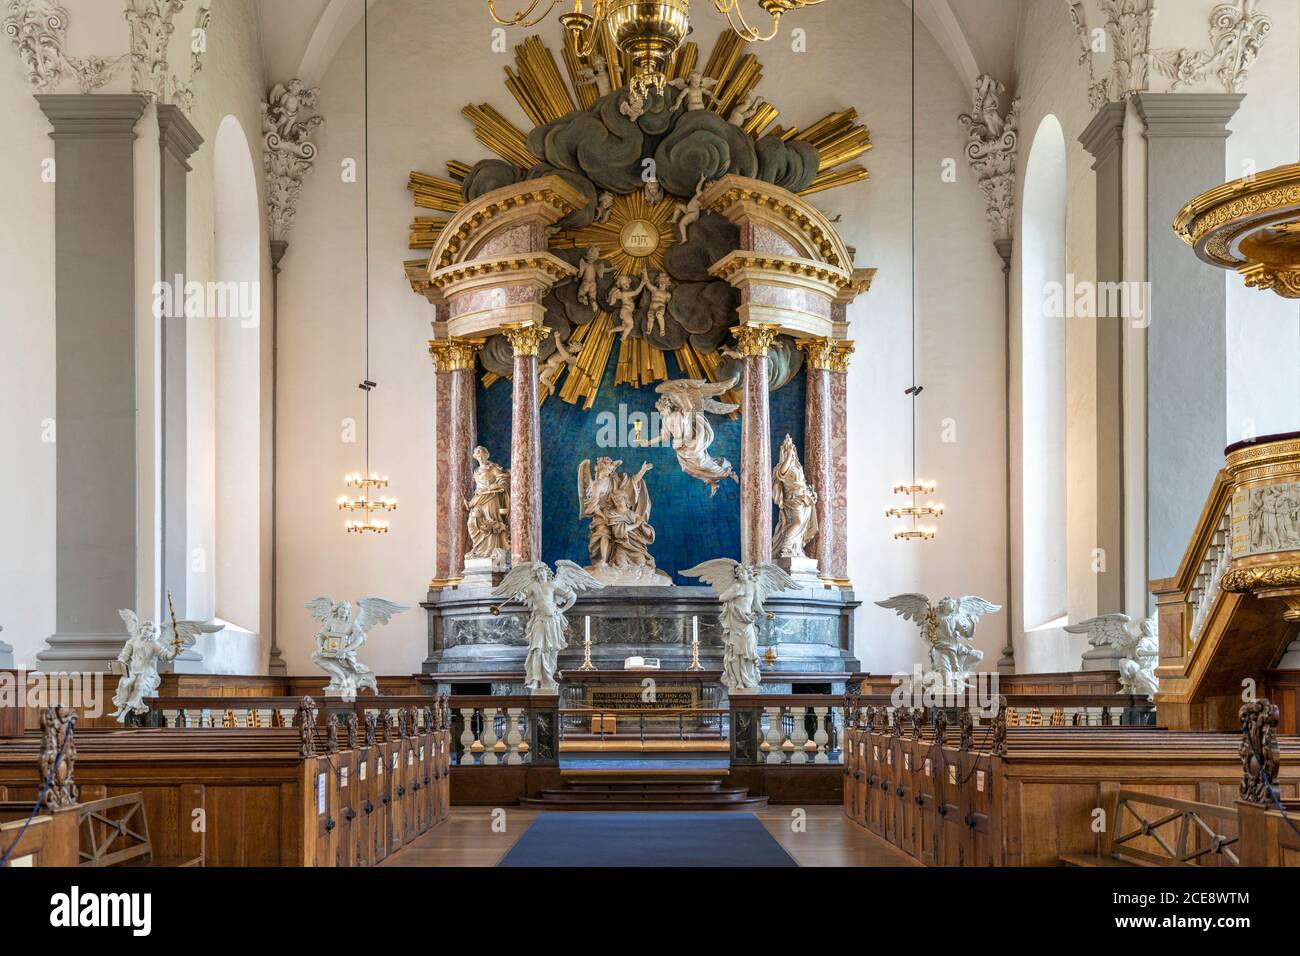 Alar von Nicodemus Tessin im Innenraum der evangelisch-lutherischen Erlöserkirche Vor Frelsers Kirke, Kopenhagen, Dänemark, Europa | la pala d'altare Foto Stock